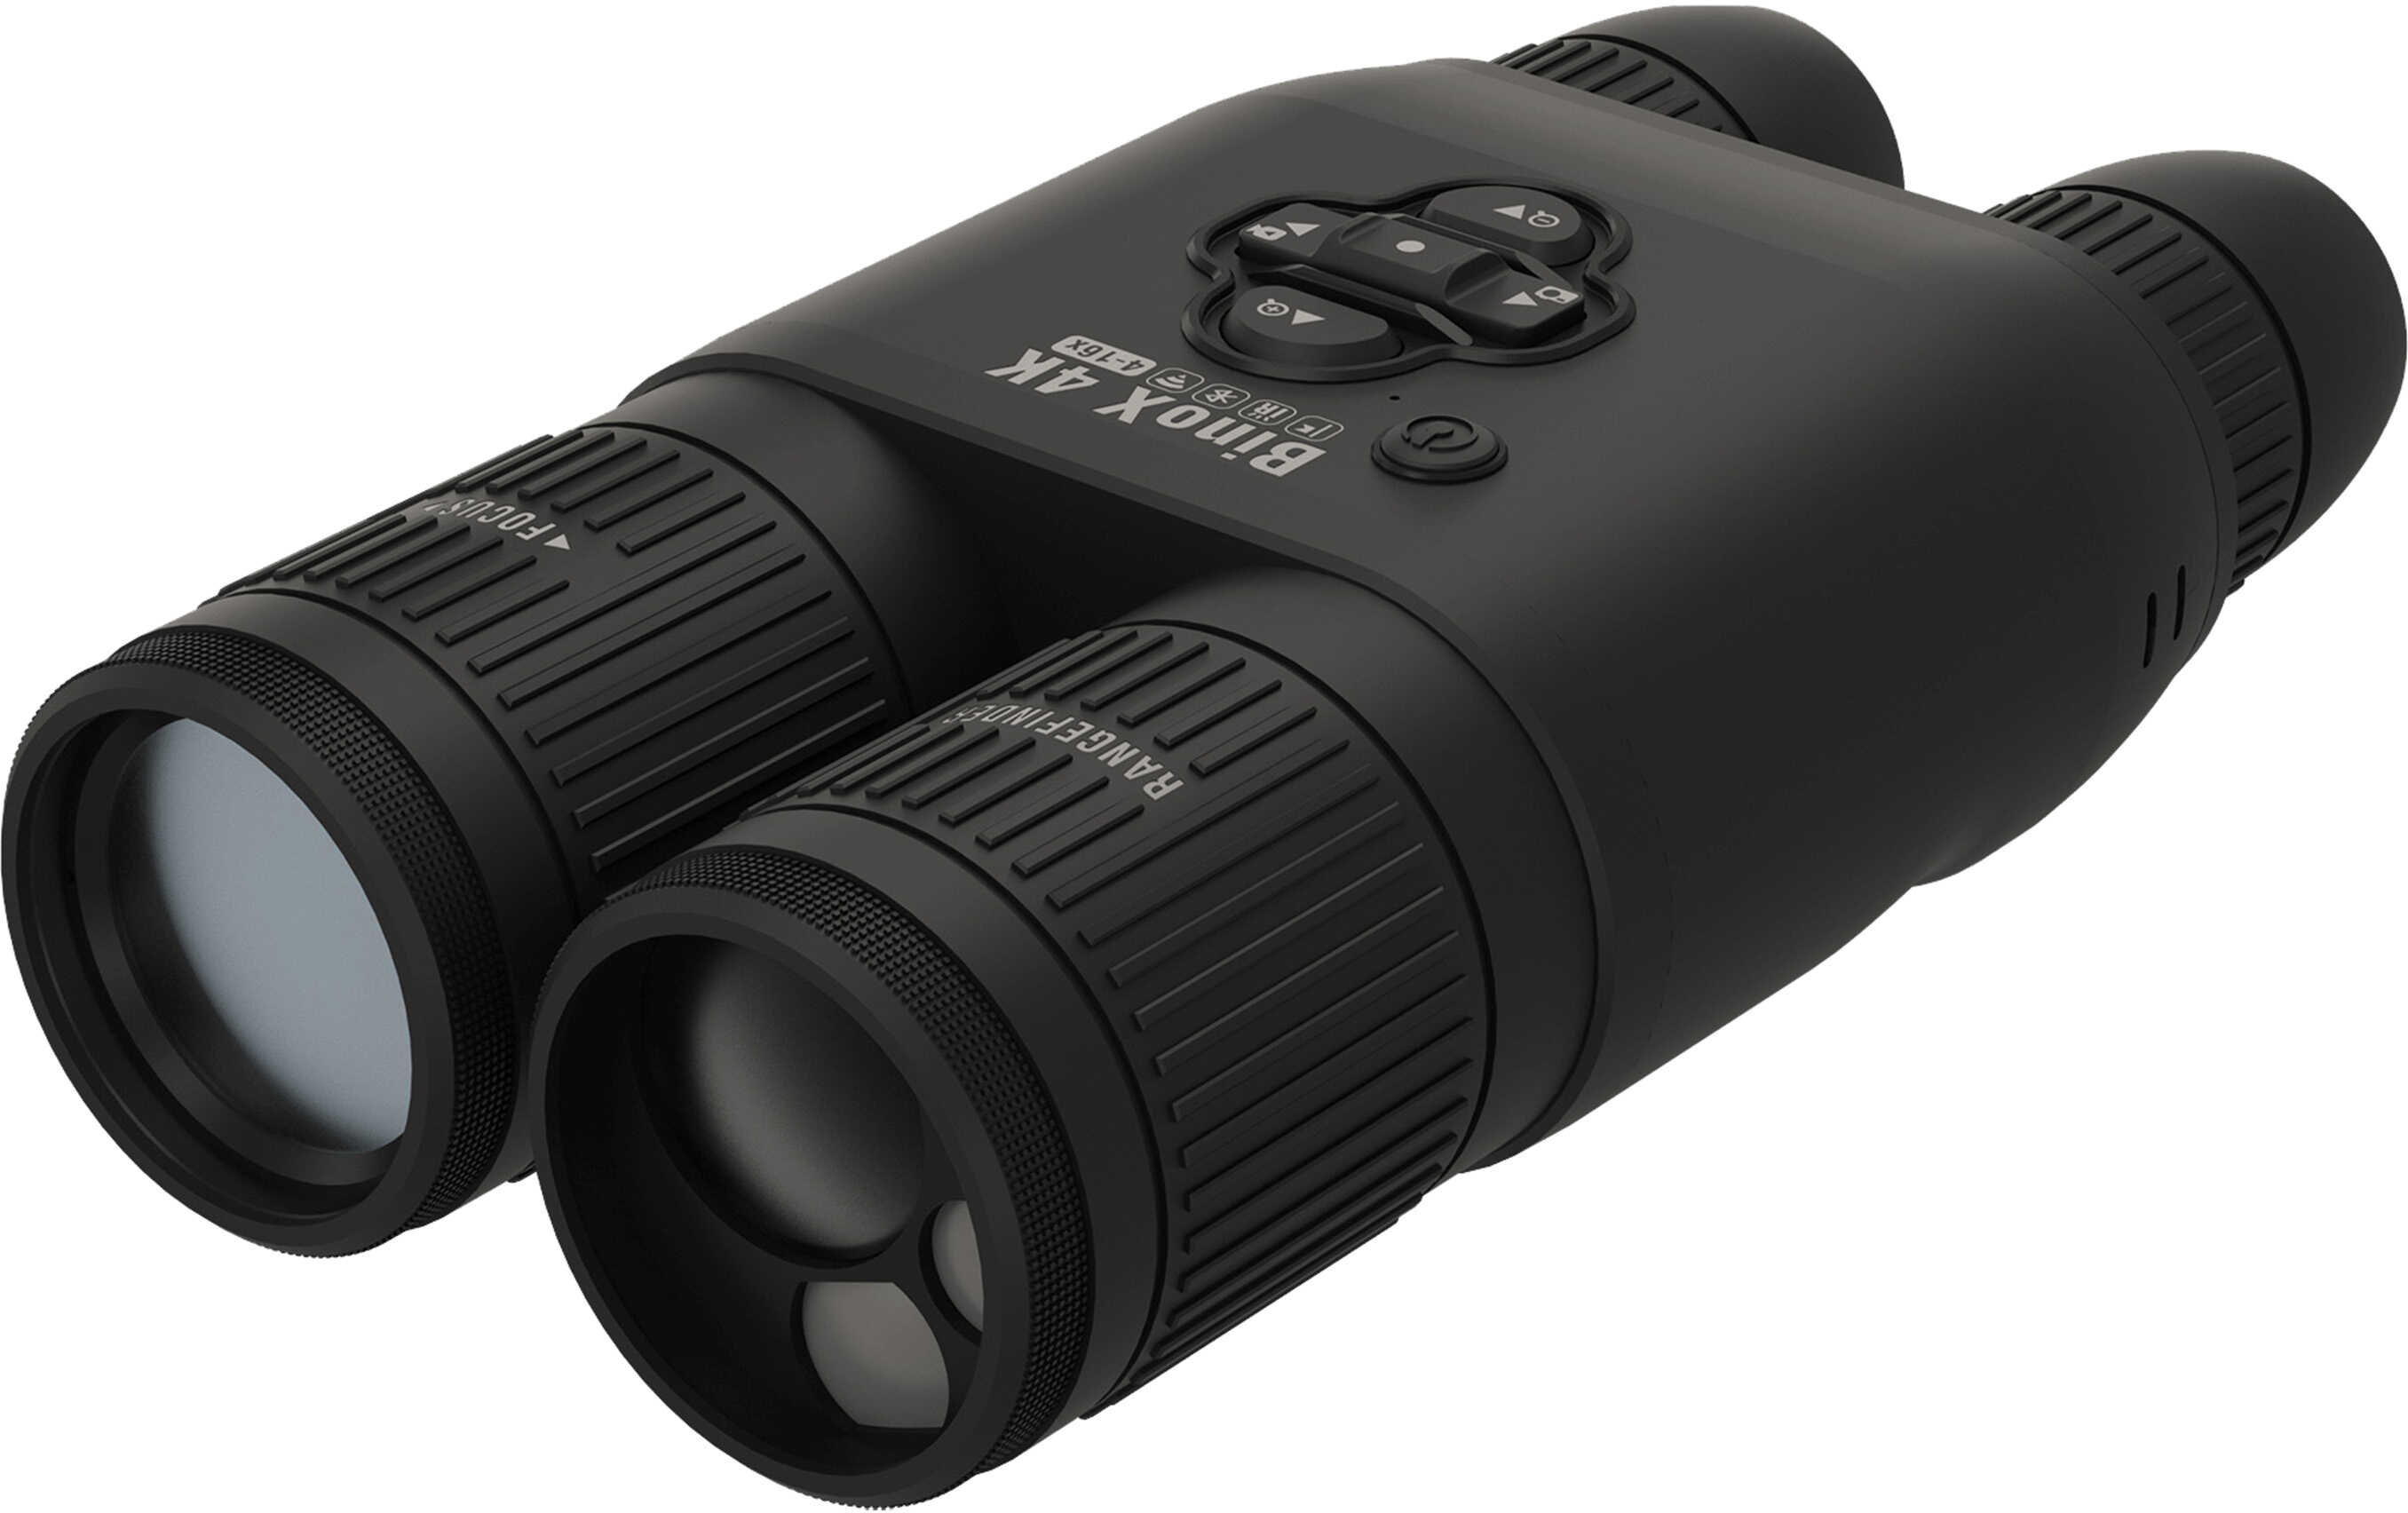 ATN BinoX 4K Night Vision Rangefinding Binocular Black 4-16x